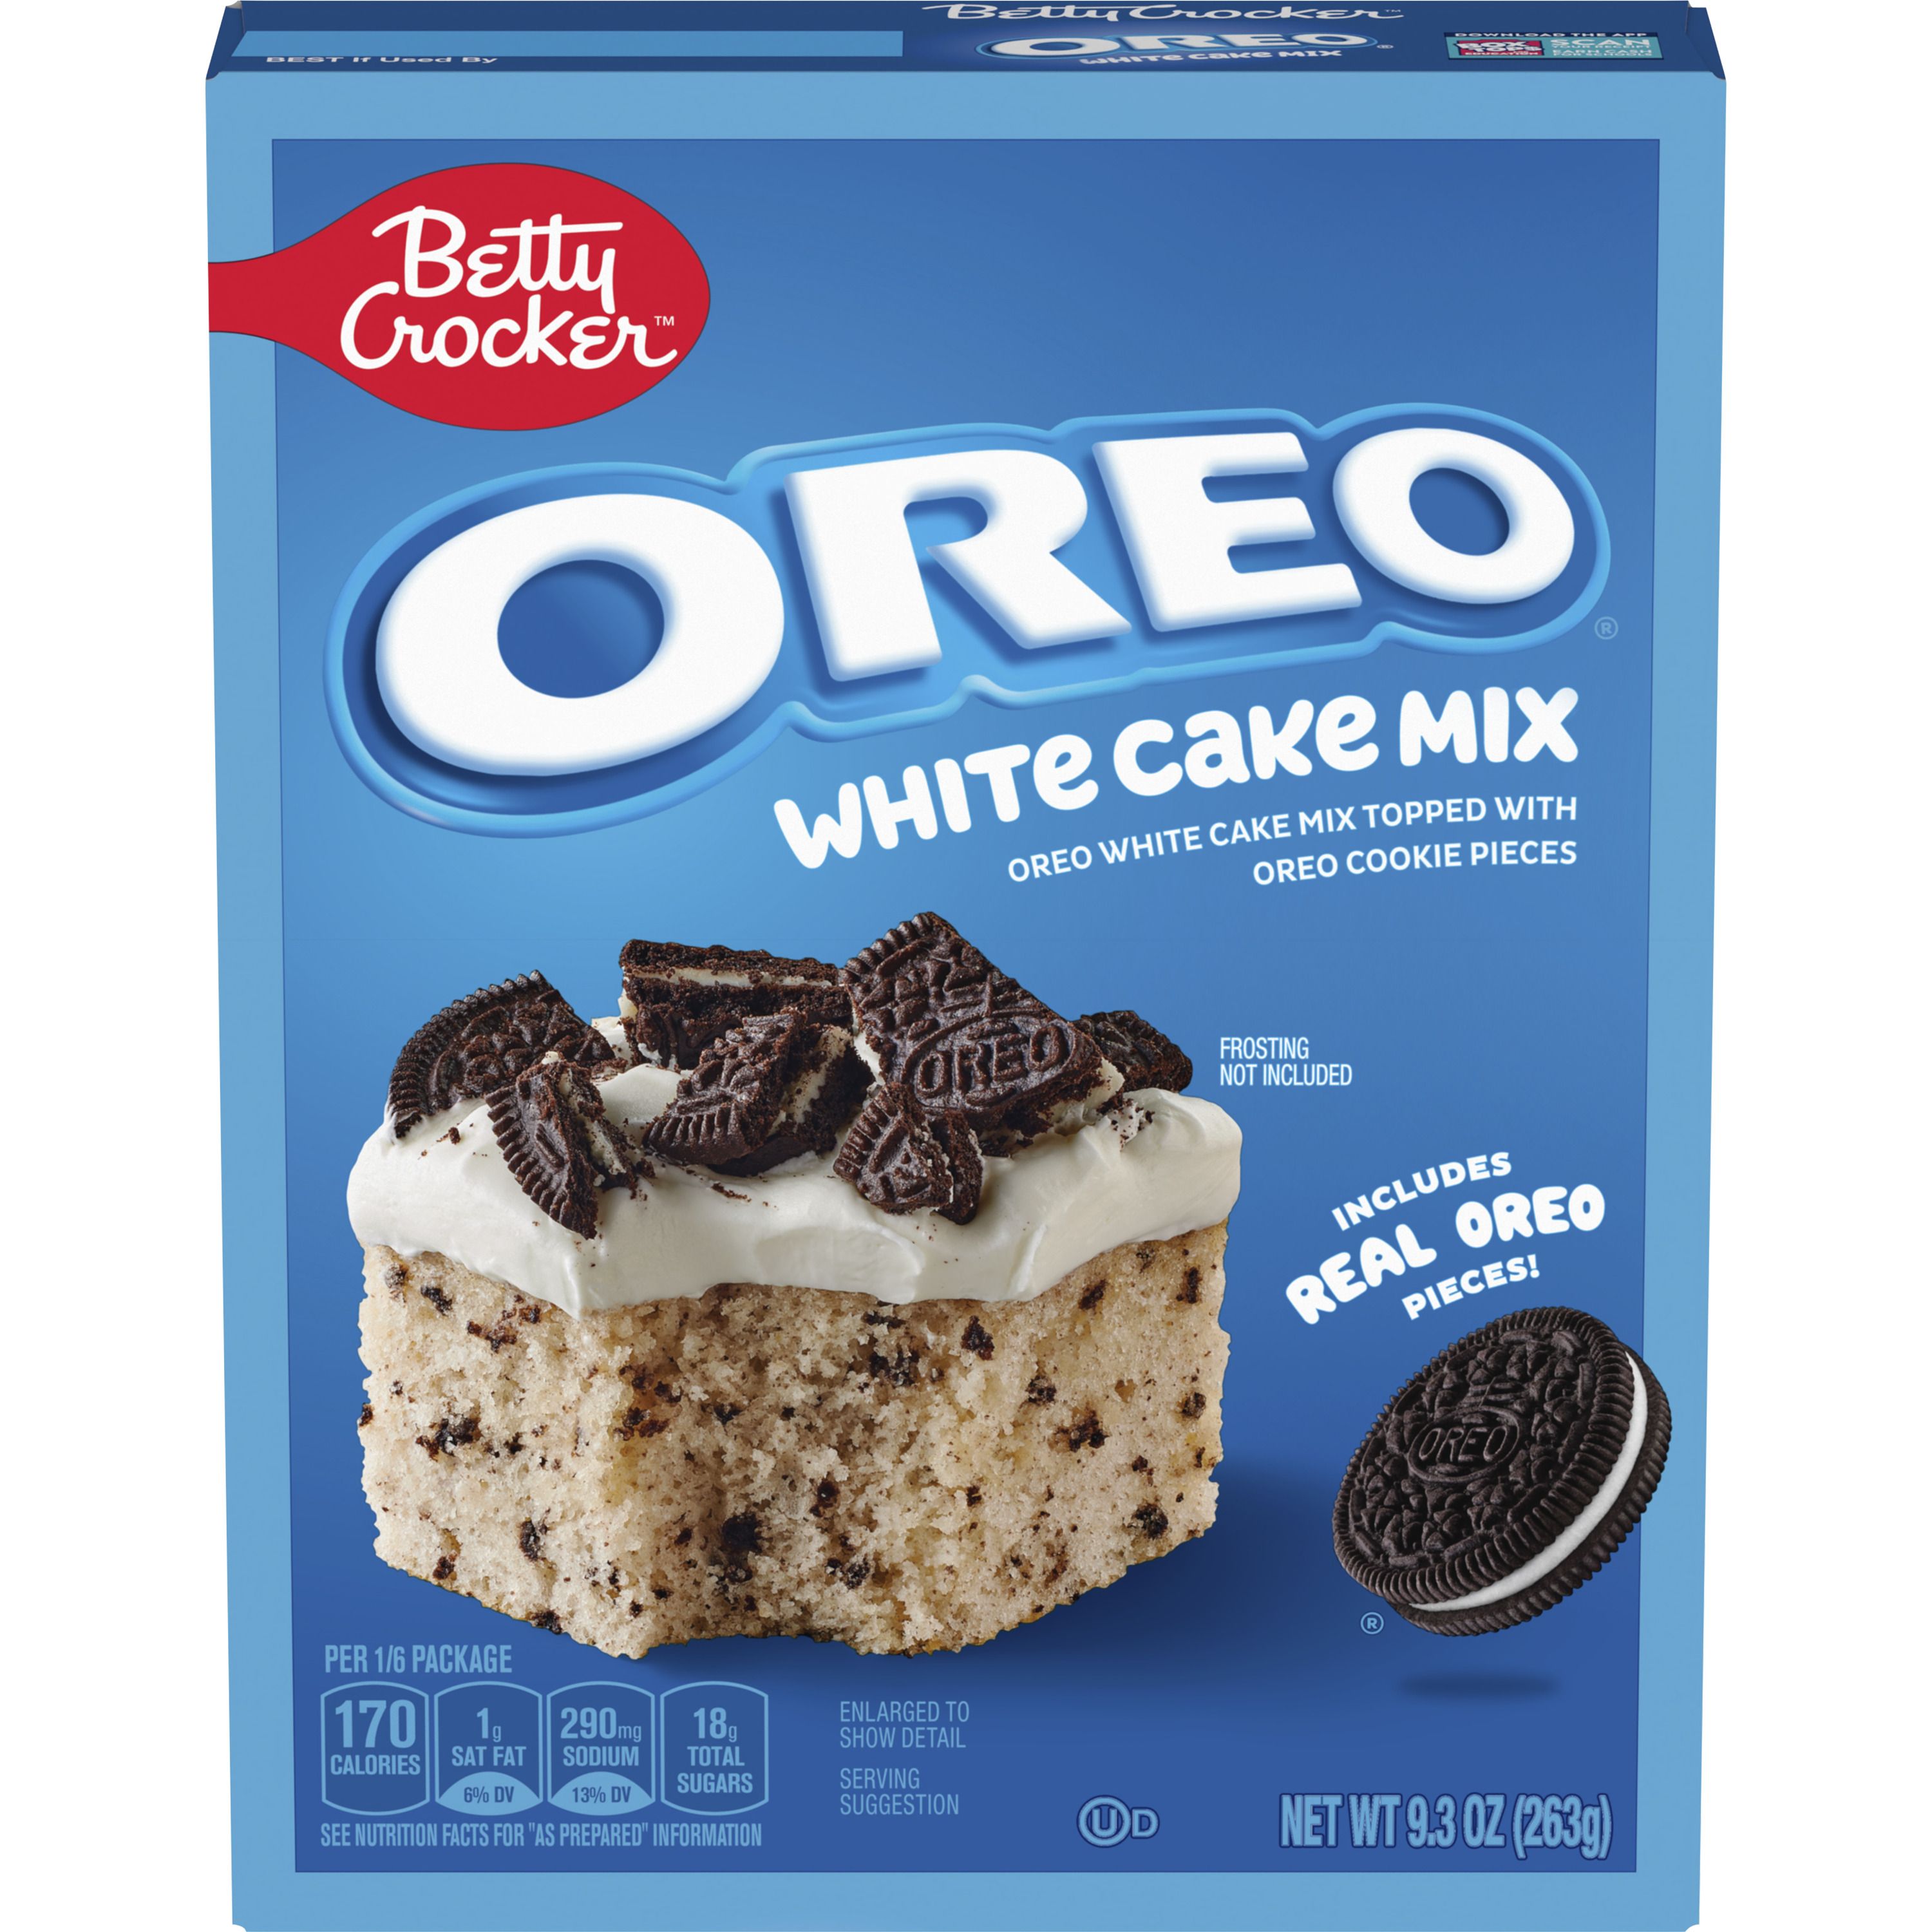 Betty Crocker OREO White Cake Mix, White Cake Baking Mix With OREO Cookie Pieces, 9.3 oz - Front